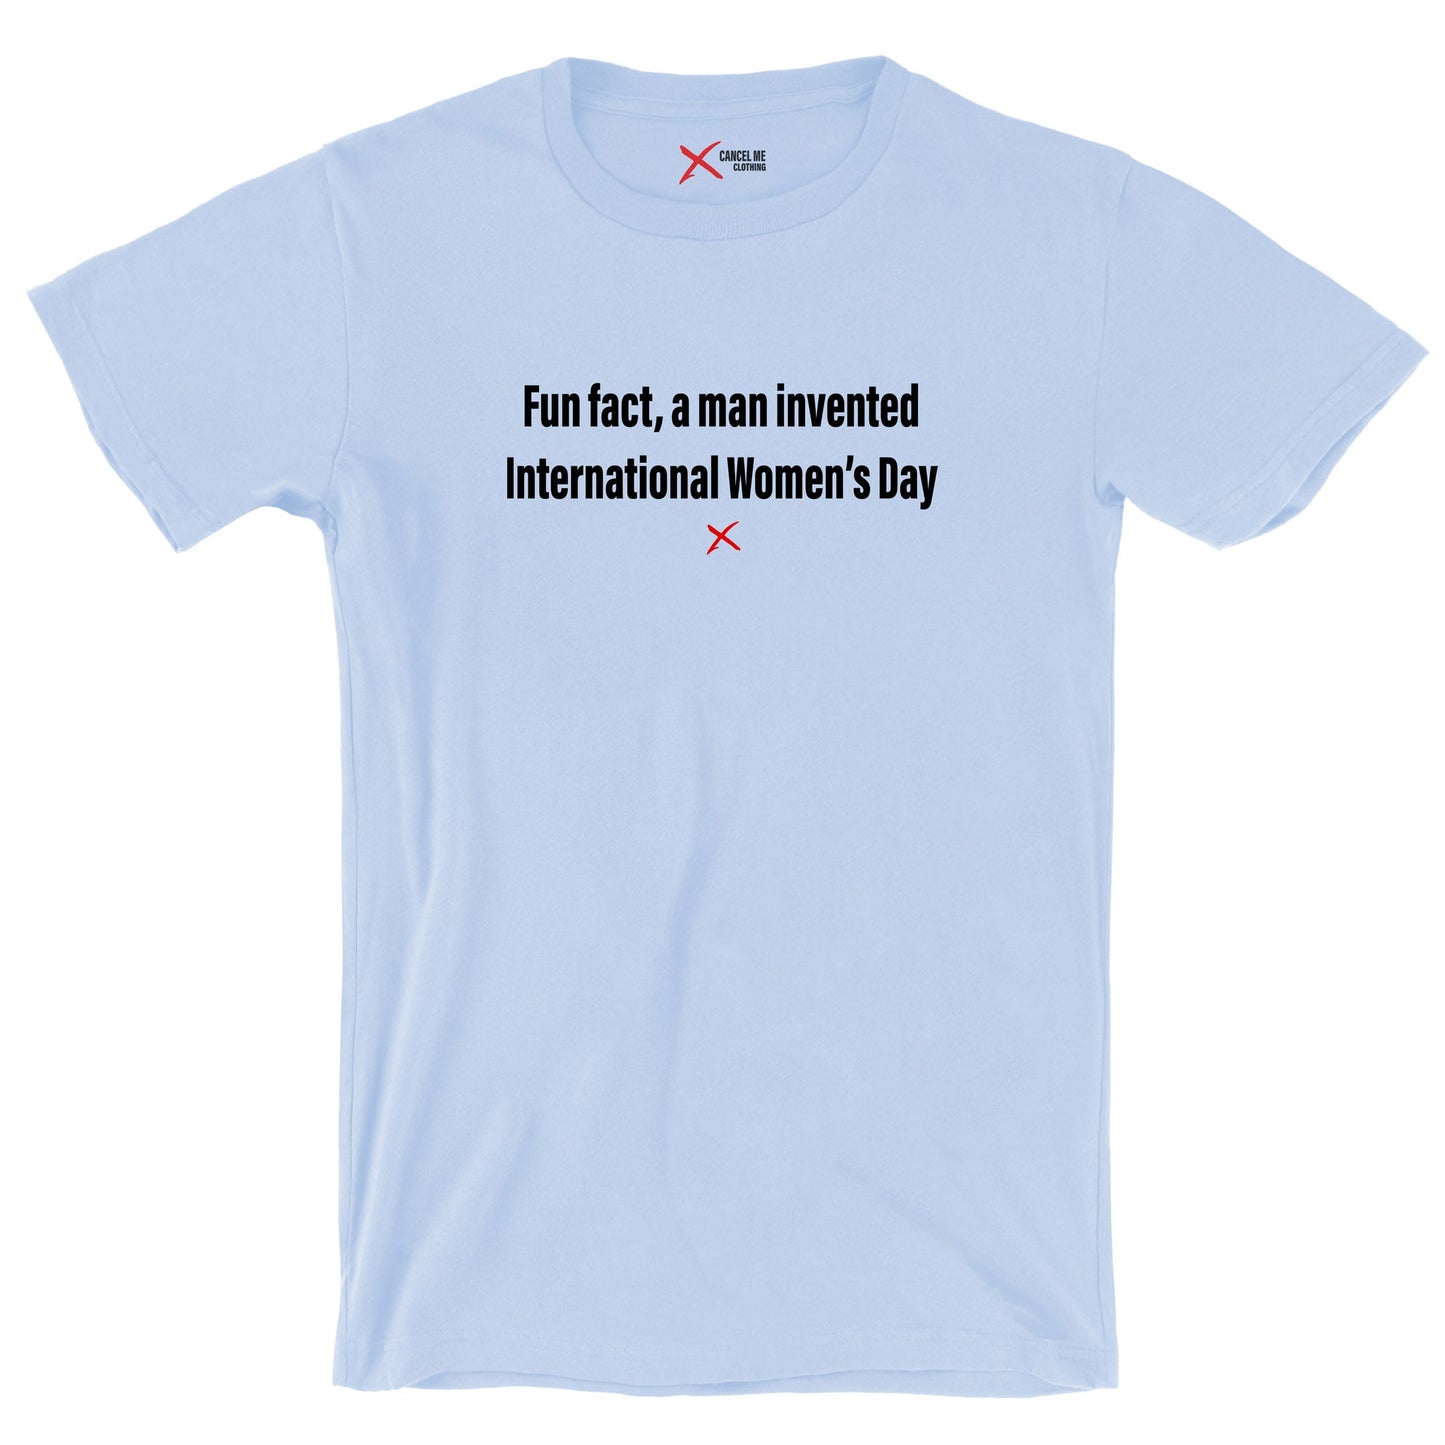 Fun fact, a man invented International Women's Day - Shirt